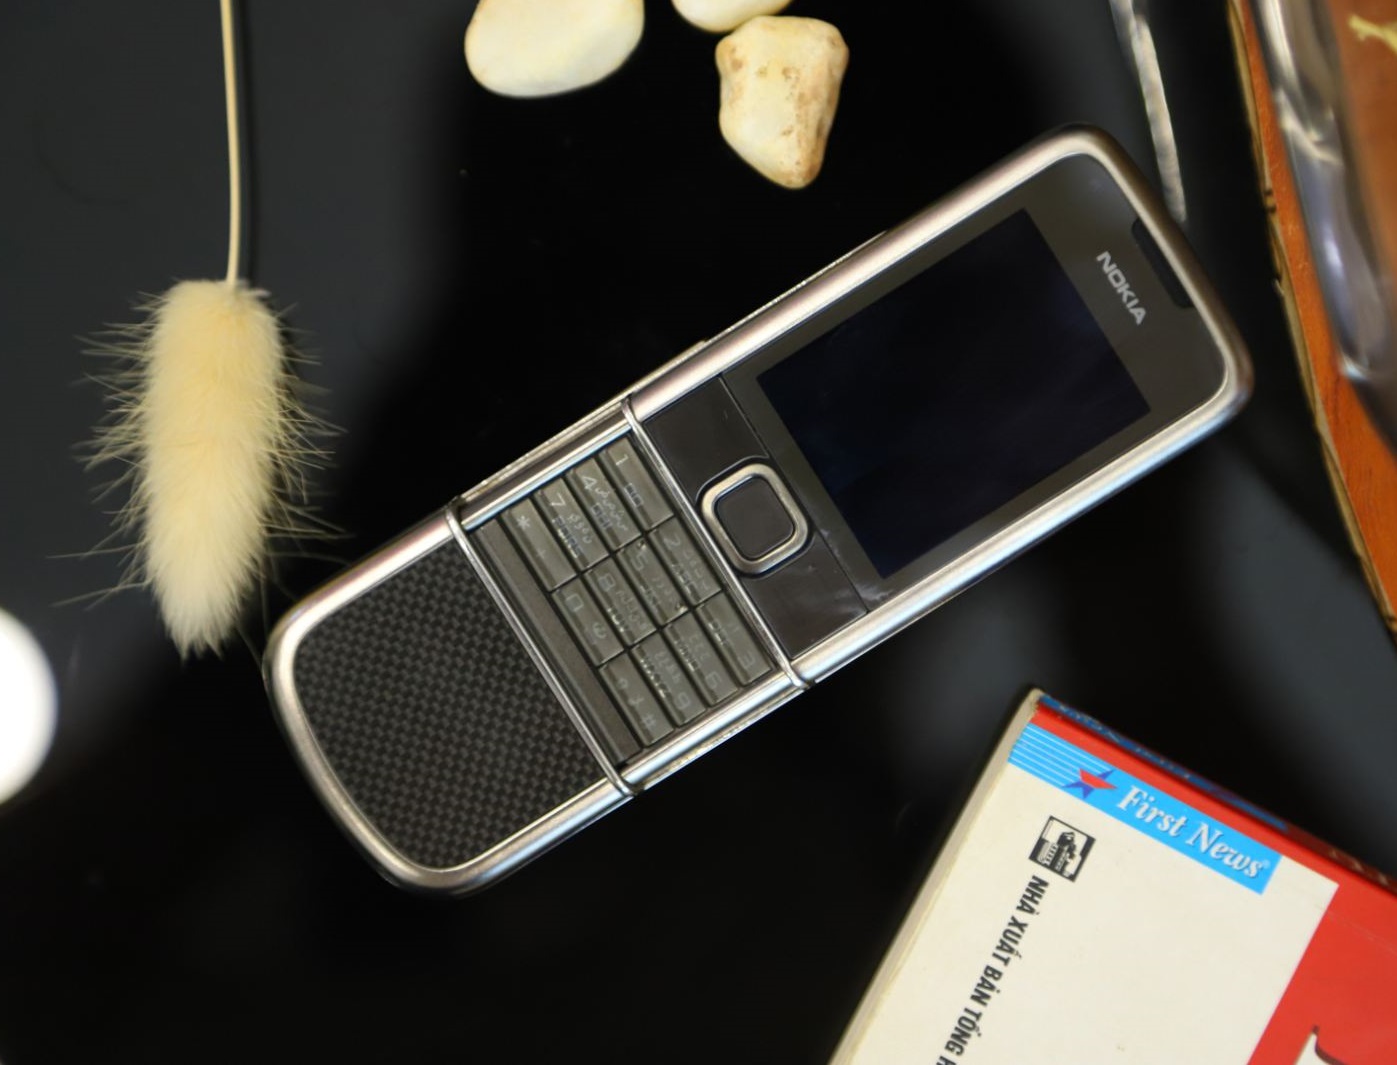 Nokia 8800e Carbon Arte 4G zin là sản phẩm hoàn hảo cho những người đam mê hiệu năng mạnh mẽ. Với màn hình sắc nét, tích hợp 4G và pin dung lượng cao, chiếc điện thoại này đáp ứng tất cả nhu cầu của bạn. Hãy xem hình ảnh để cảm nhận sự khác biệt của Nokia 8800e Carbon Arte 4G zin.